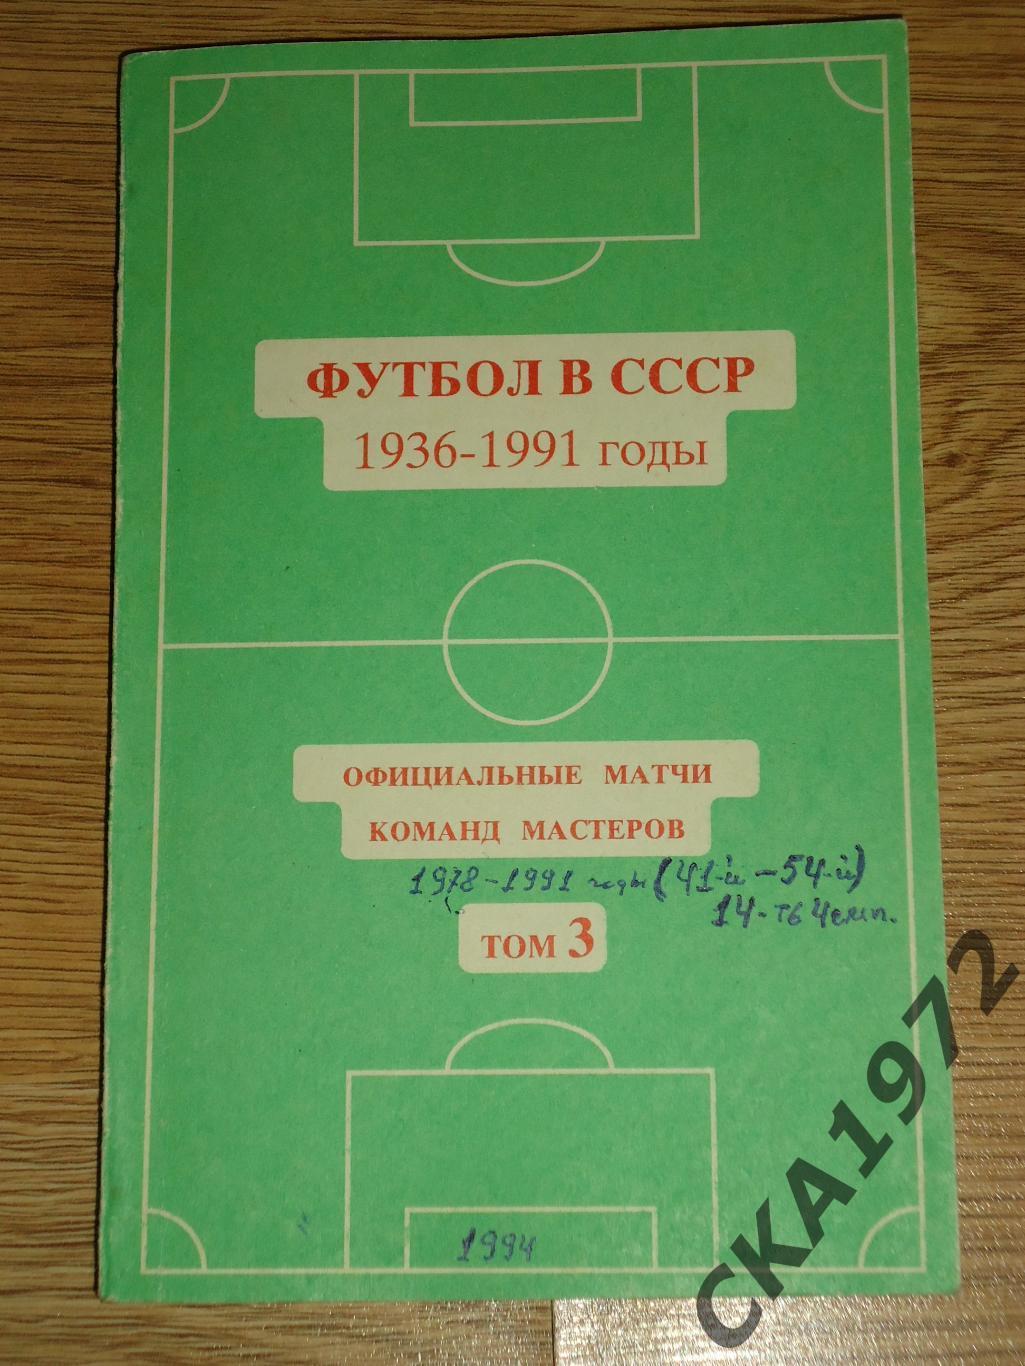 справочник Футбол в СССР 1978-1991 том 3 1994 +++